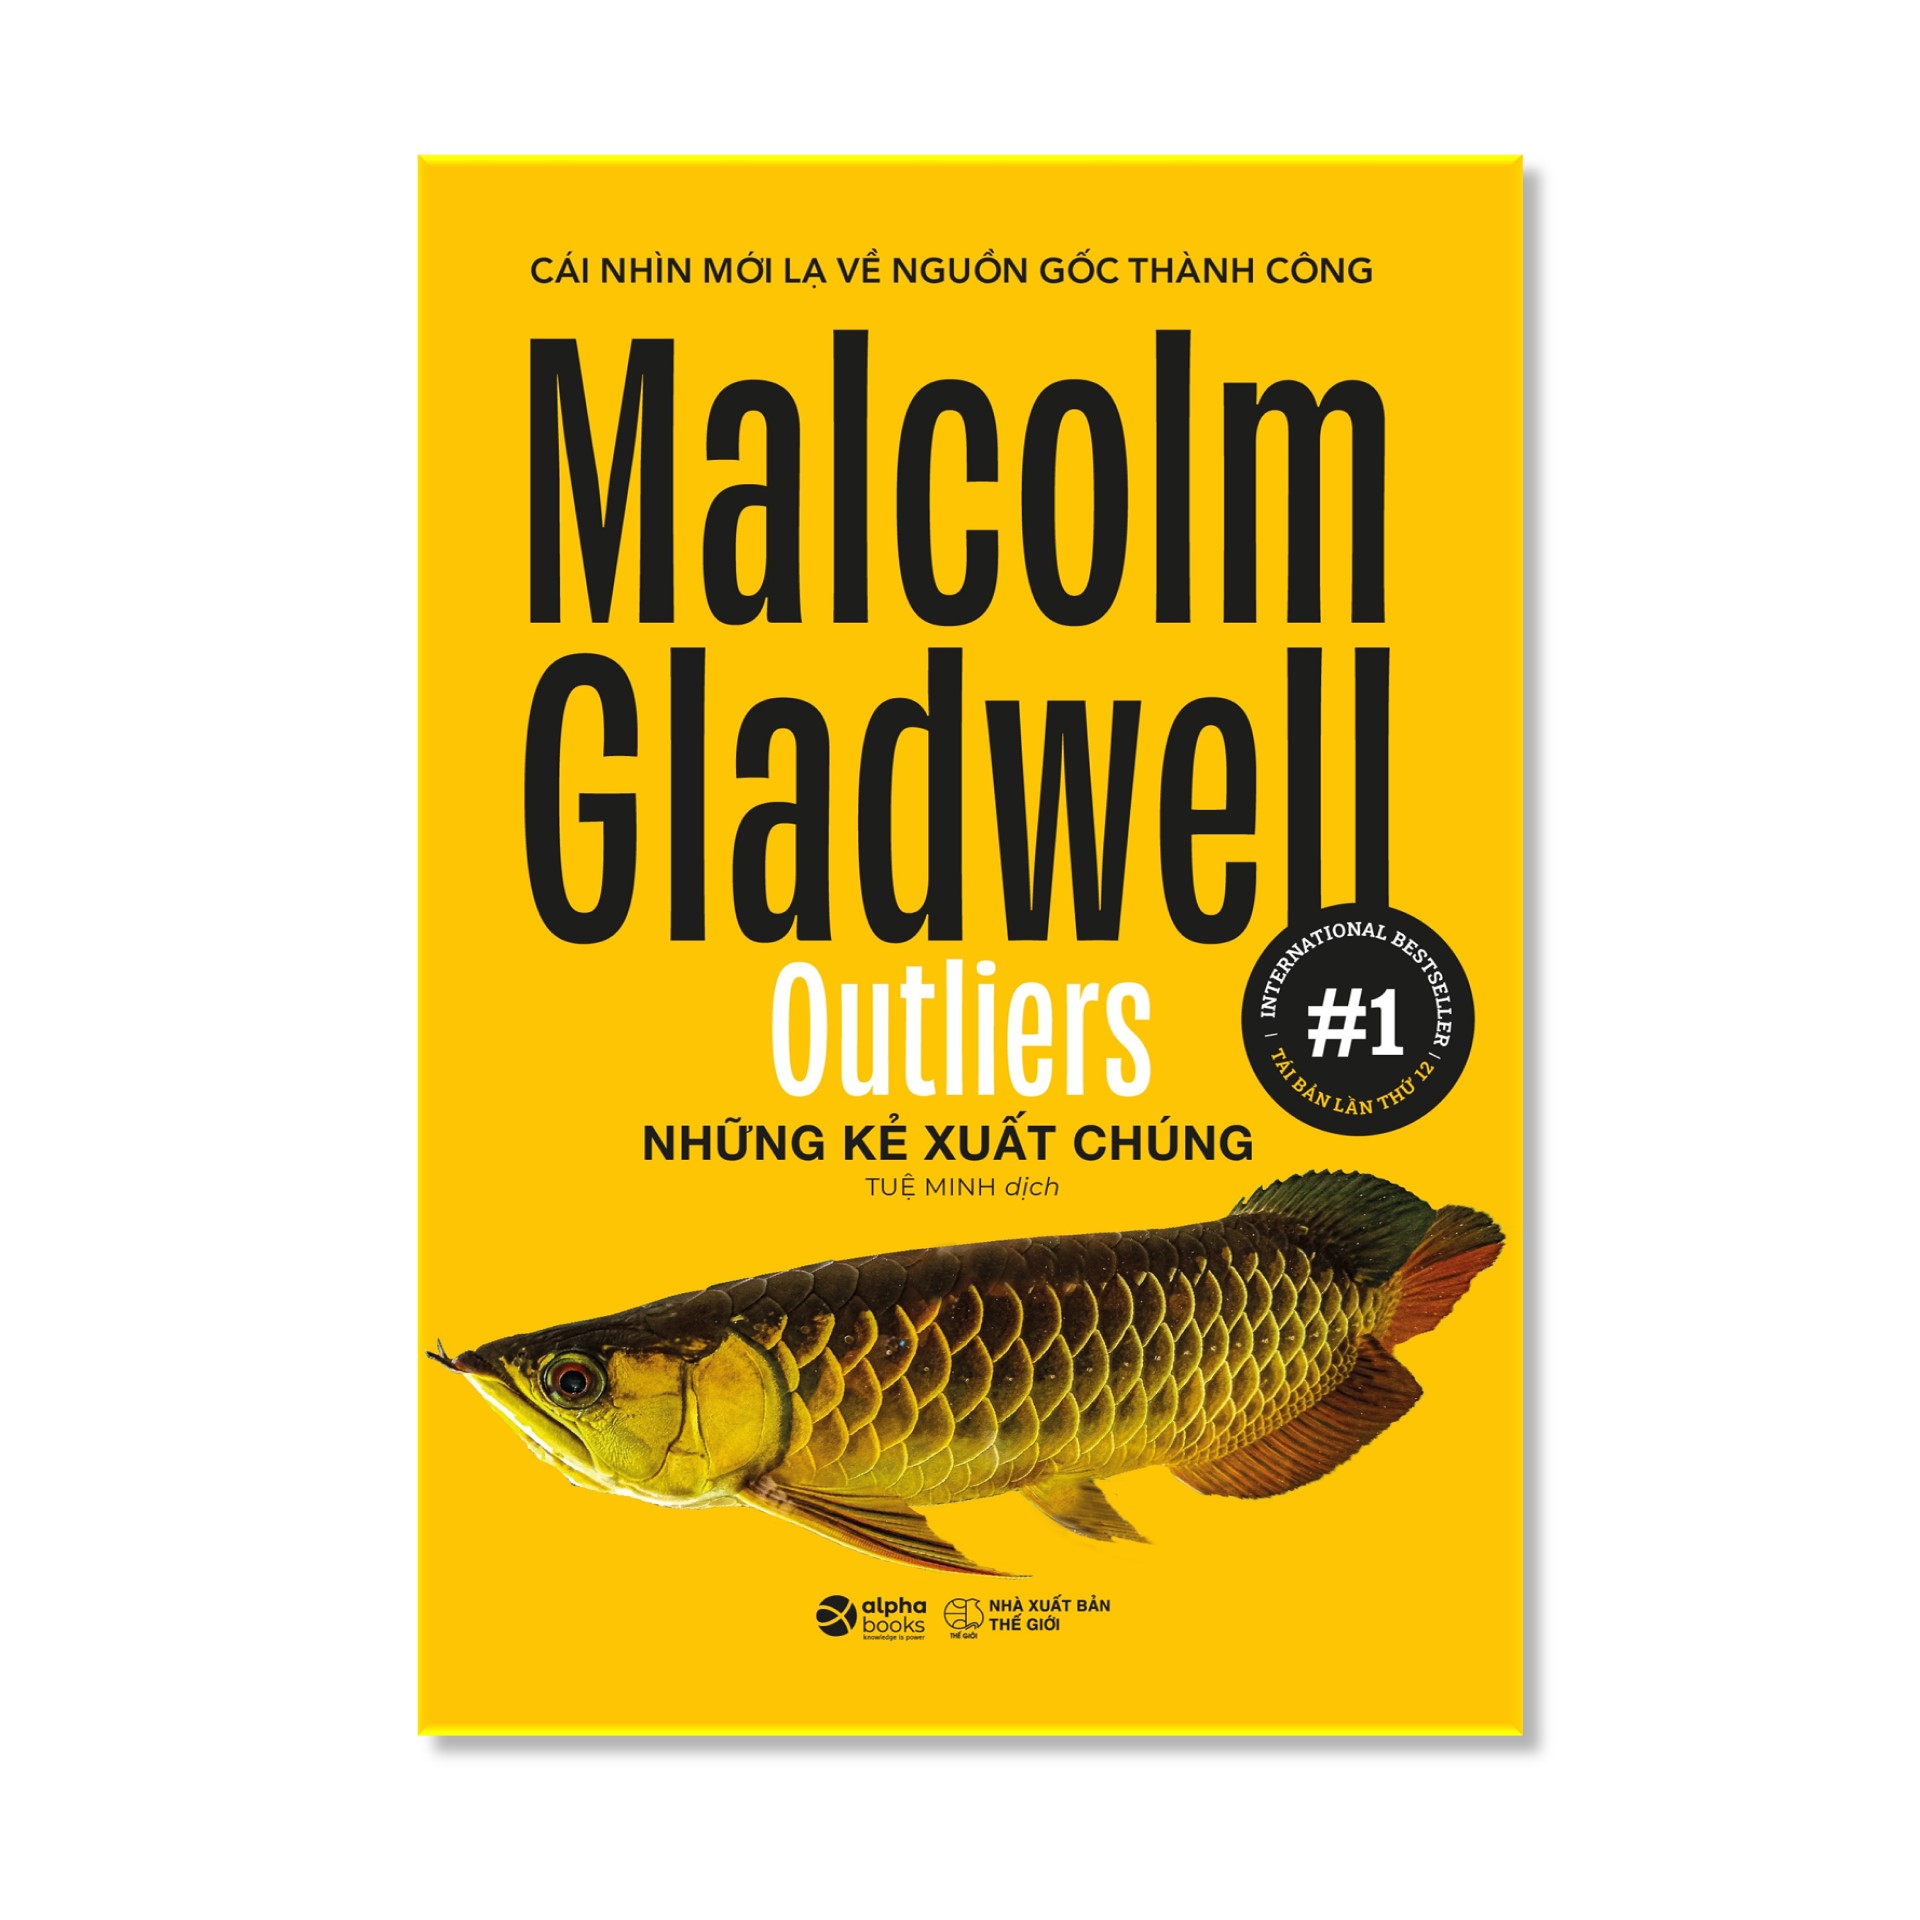 Bộ Sách 6 Cuốn Về Tâm Lý Học Ứng Dụng Của Malcolm Gladwell (Tái Bản 2020) : Những Kẻ Xuất Chúng - Outliers + Điểm Bùng Phát - The Tipping Point + Trong Chớp Mắt - Blink + Chú Chó Nhìn Thấy Gì - What The Dog Saw + David Và Goliath - David And Goliath + Đọc Vị Người Lạ - Talking To Strangers